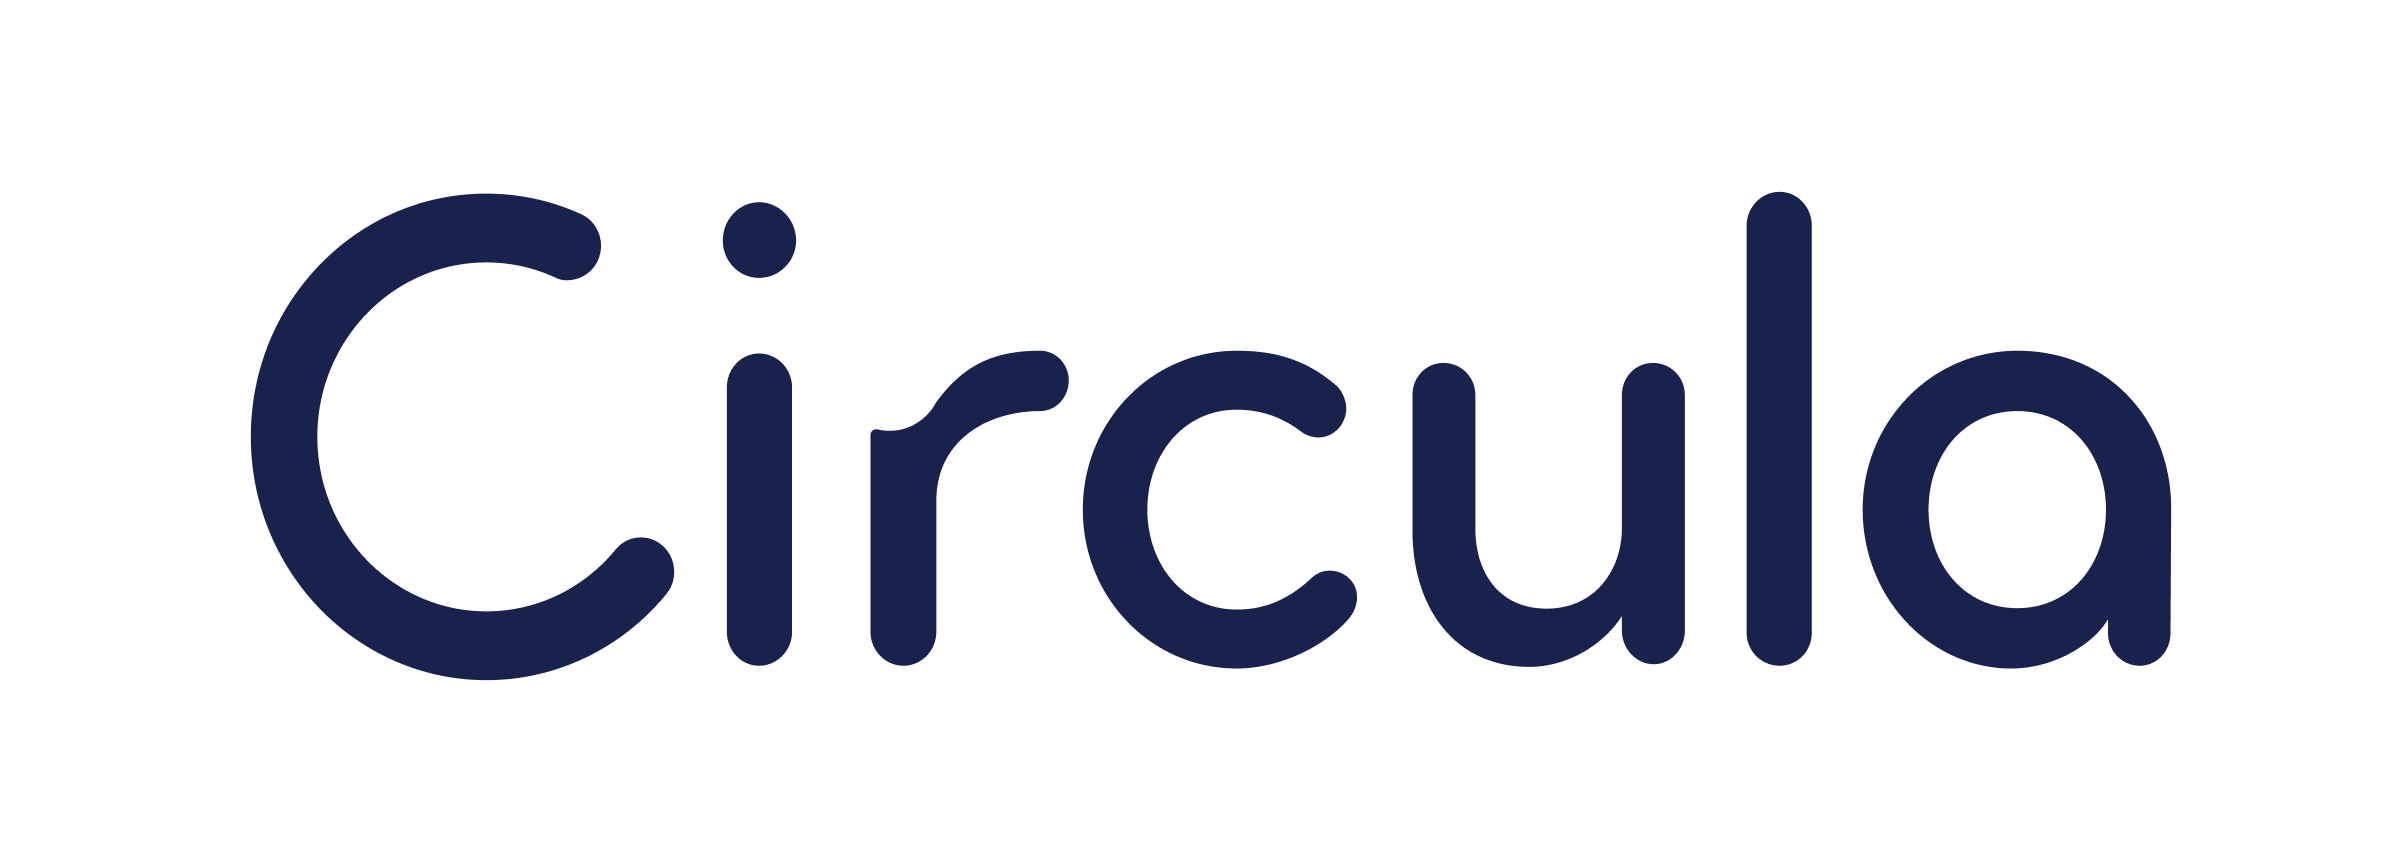 circula Logo